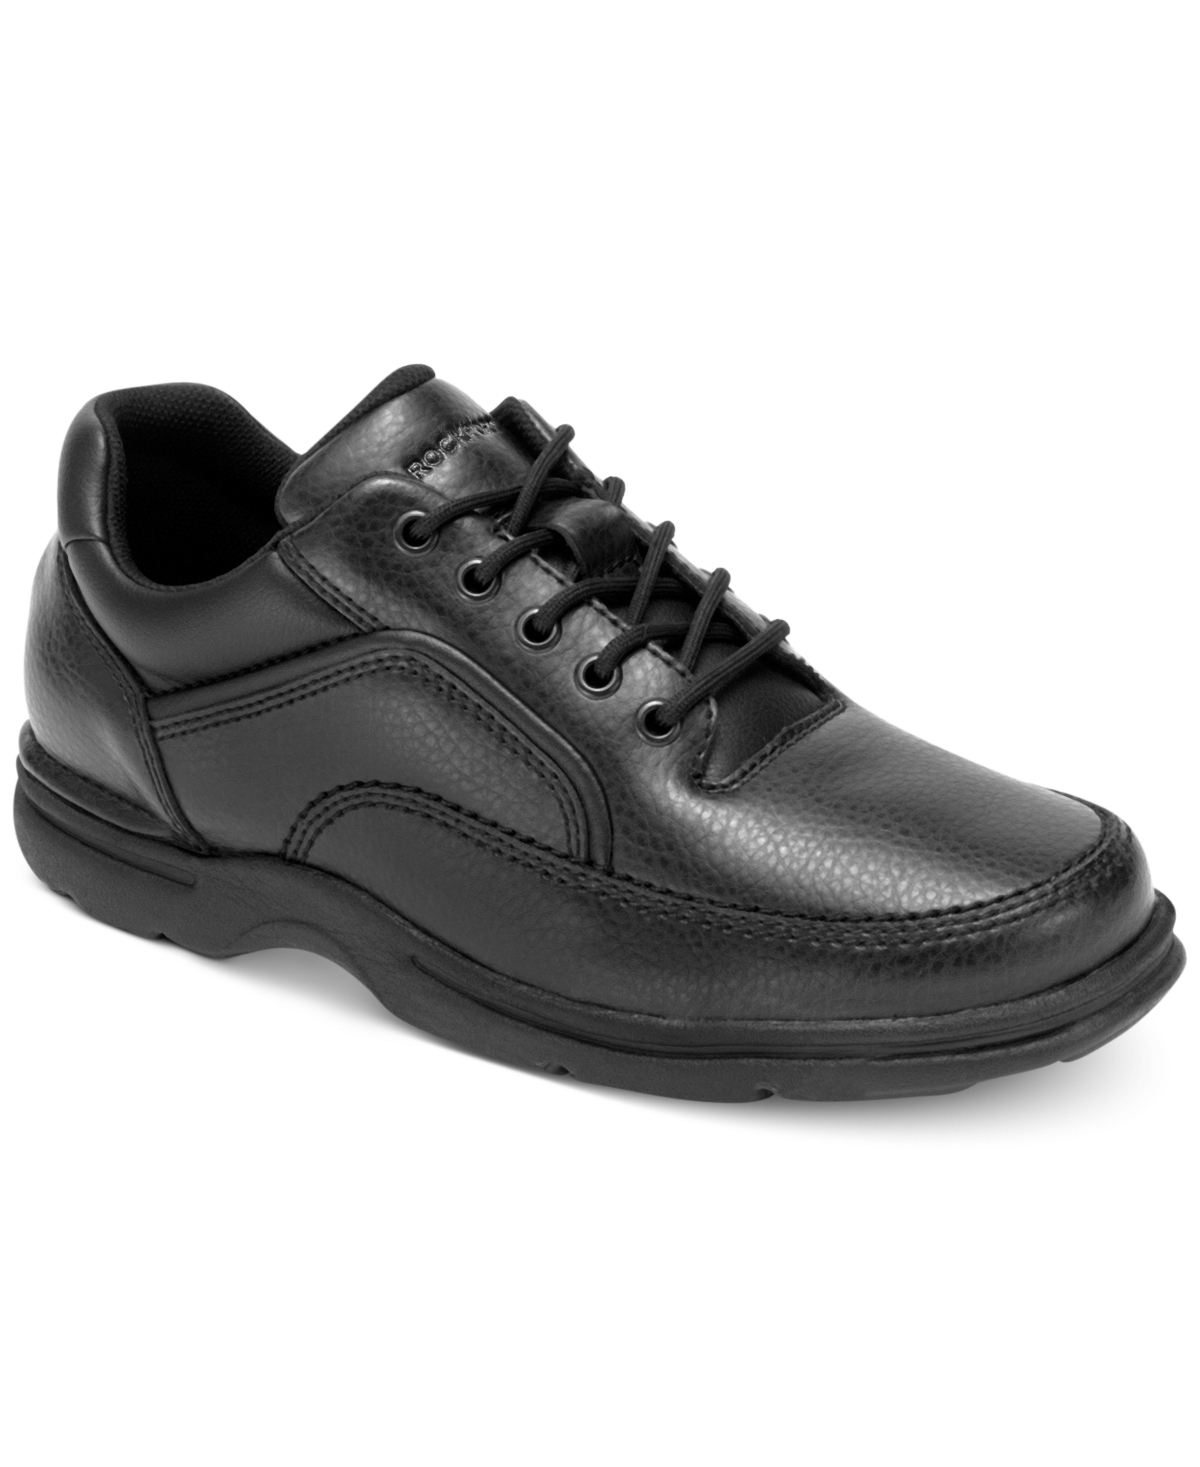 Men's Eureka Walking Shoes - Brown